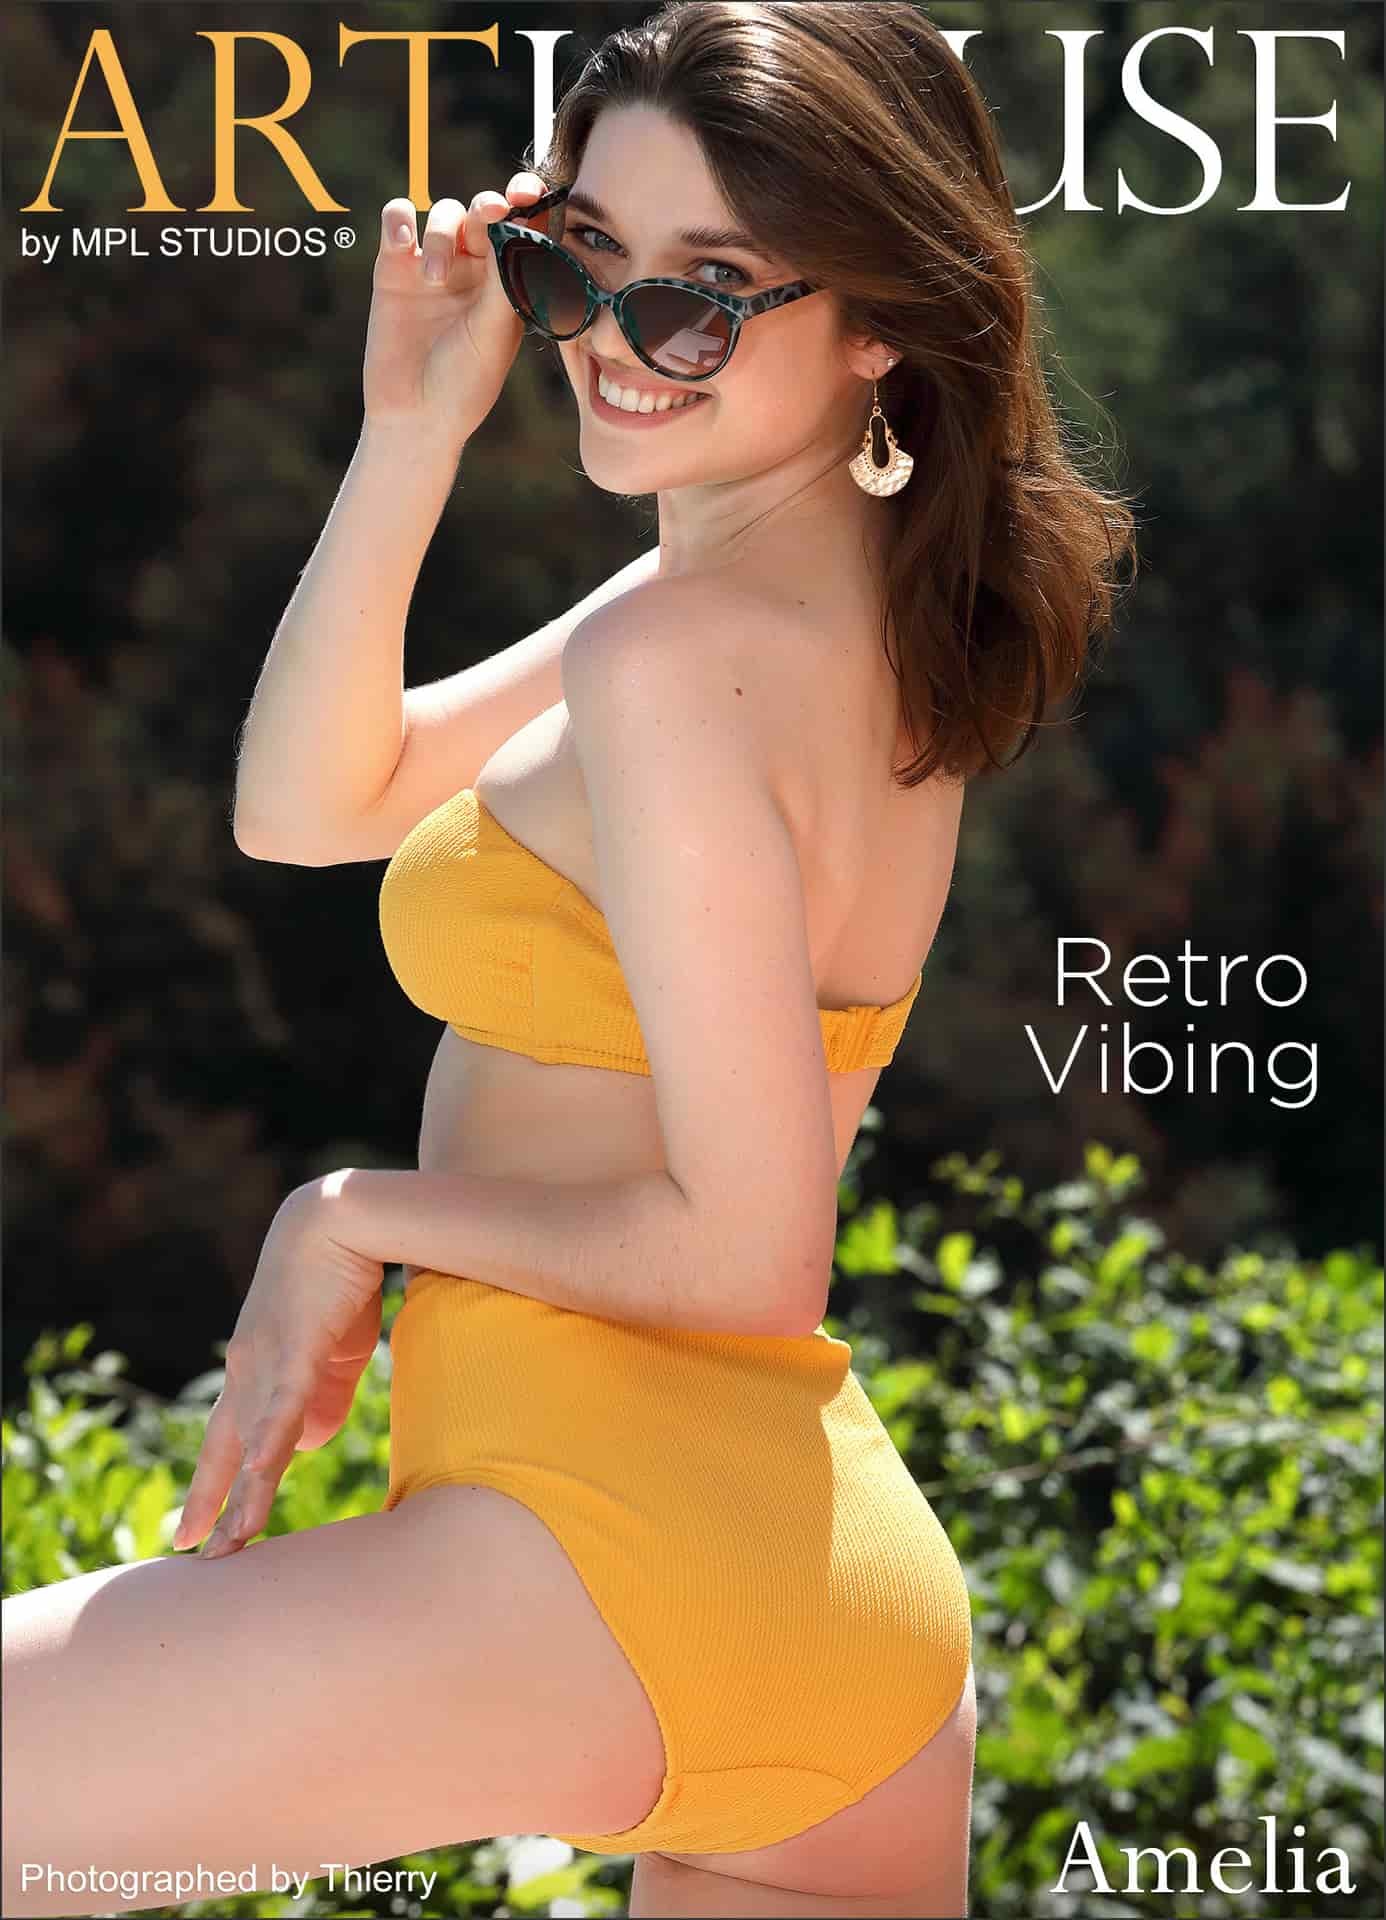 Girl taking off her yellow bikini by the pool - Amelia - Retro Vibing